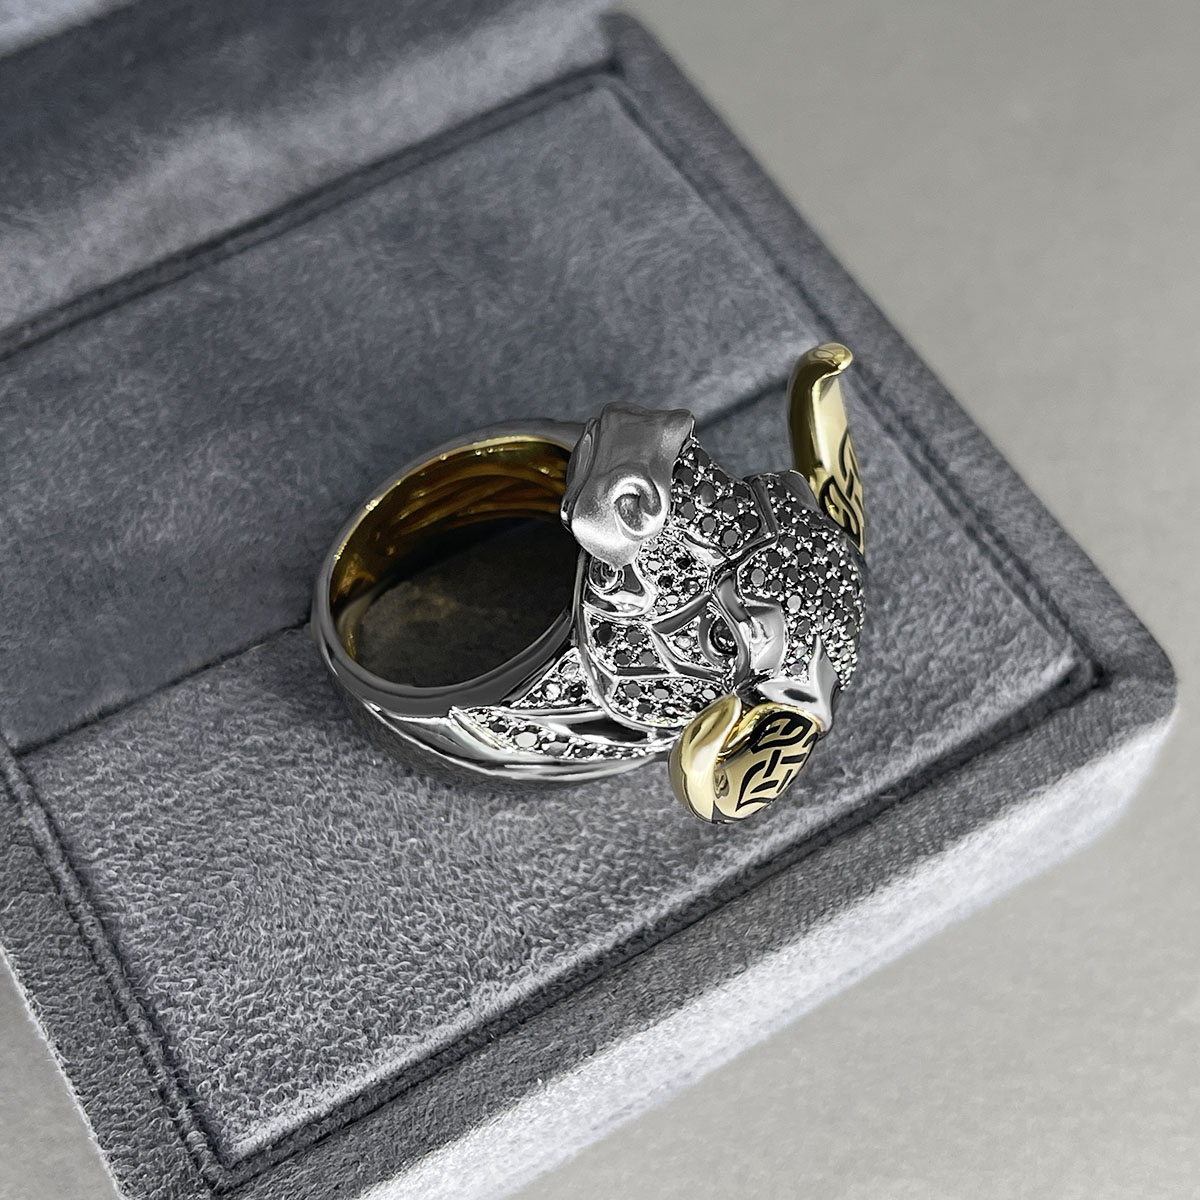 Мужское кольцо Бык с черными бриллиантами и рубинами в желтом золоте 750 пробы, фото № 3